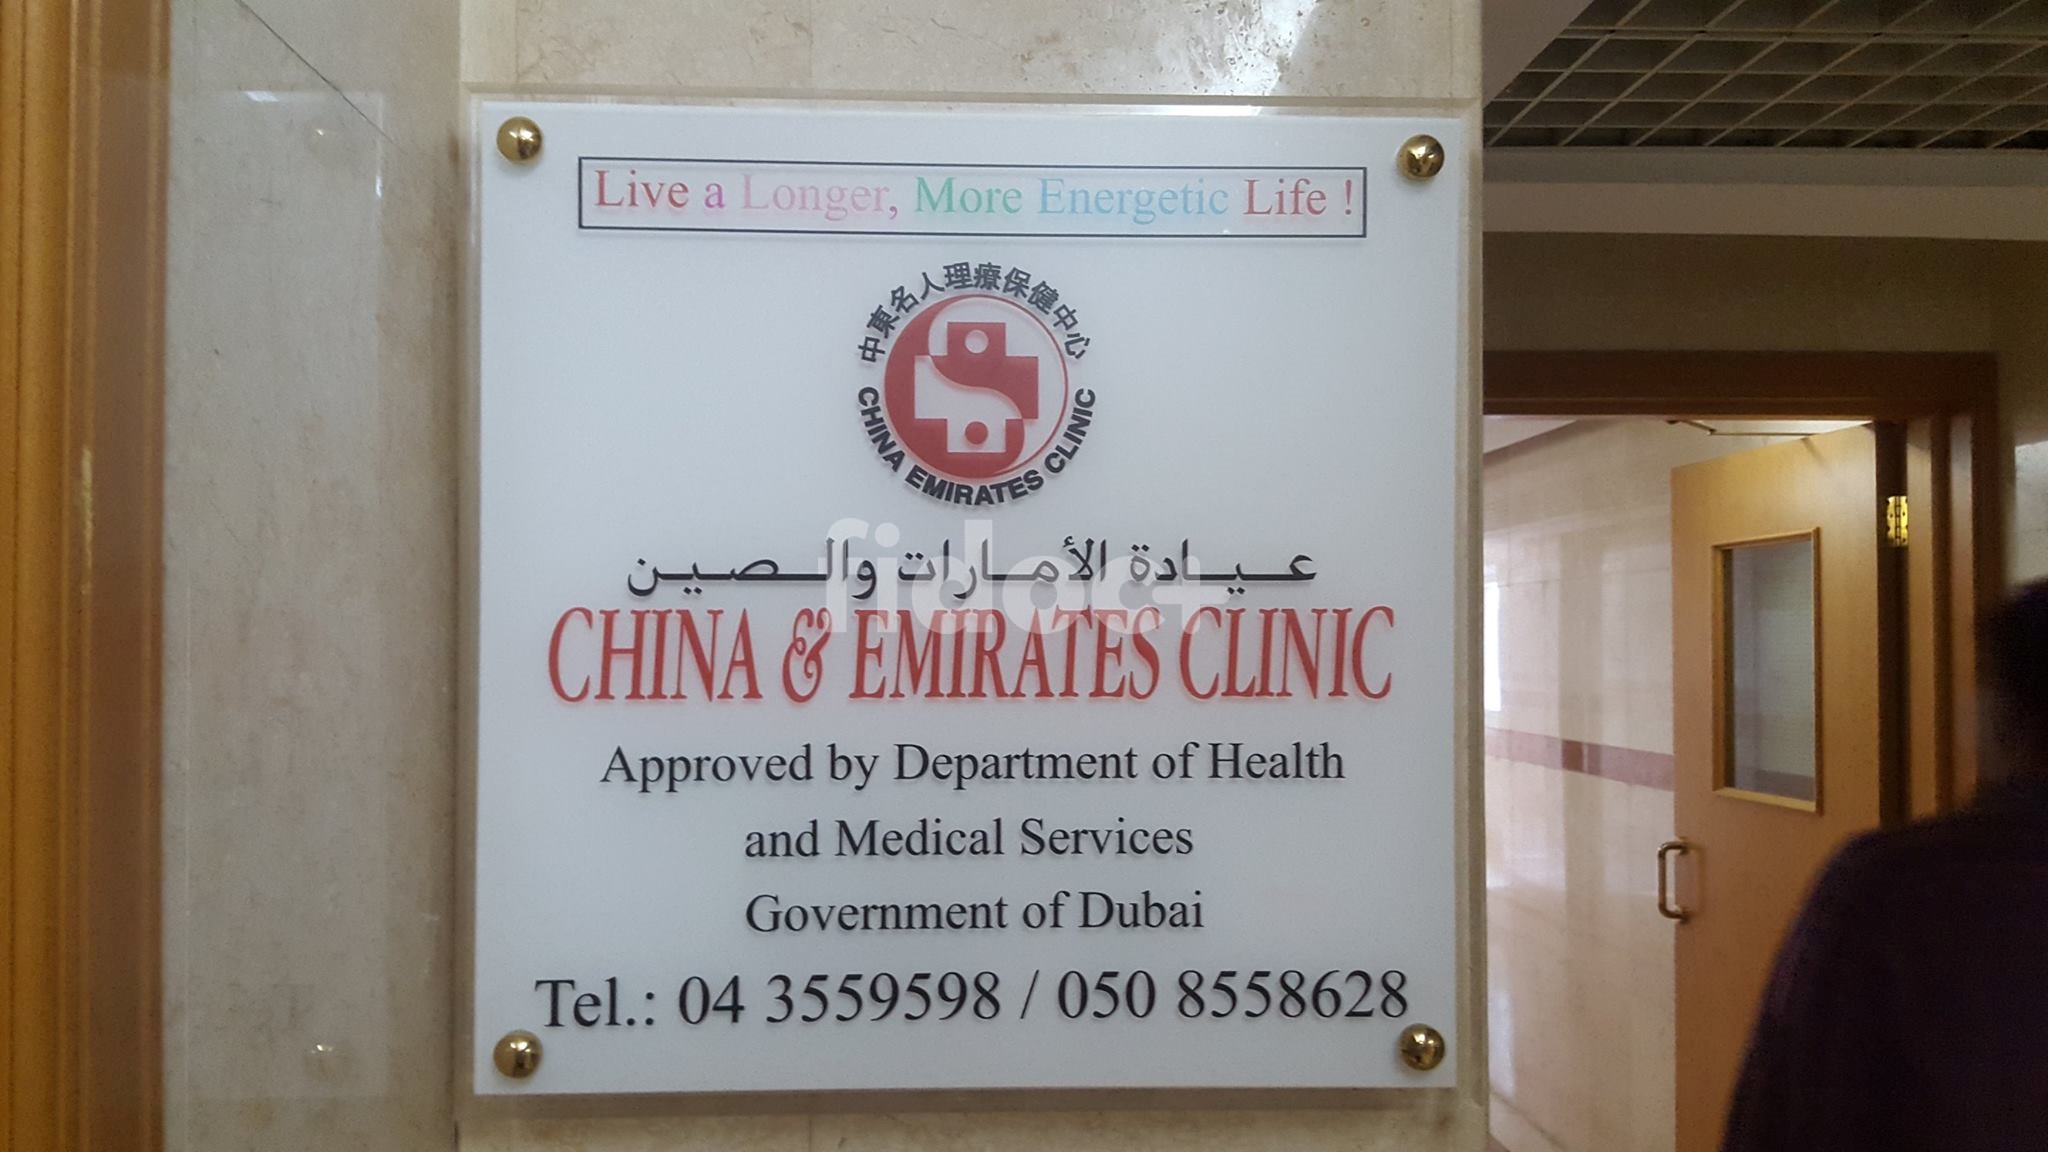 China & Emirates Clinic, Dubai